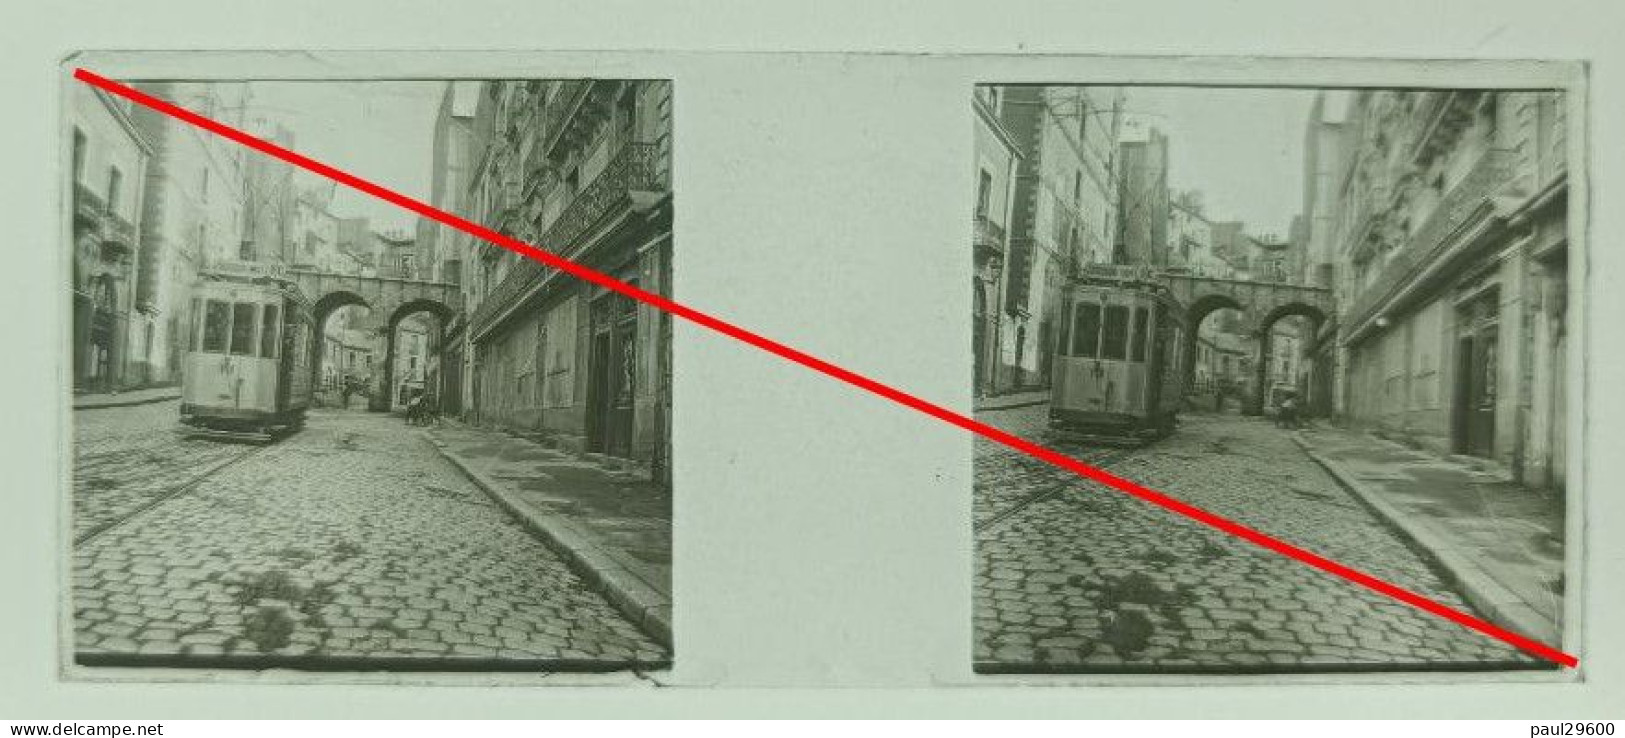 Plaque De Verre, 44 Nantes, Tramway, Pont Rousseau, Rue, Pavées, Trottoir, Maisons, Année 1916. - Diapositivas De Vidrio